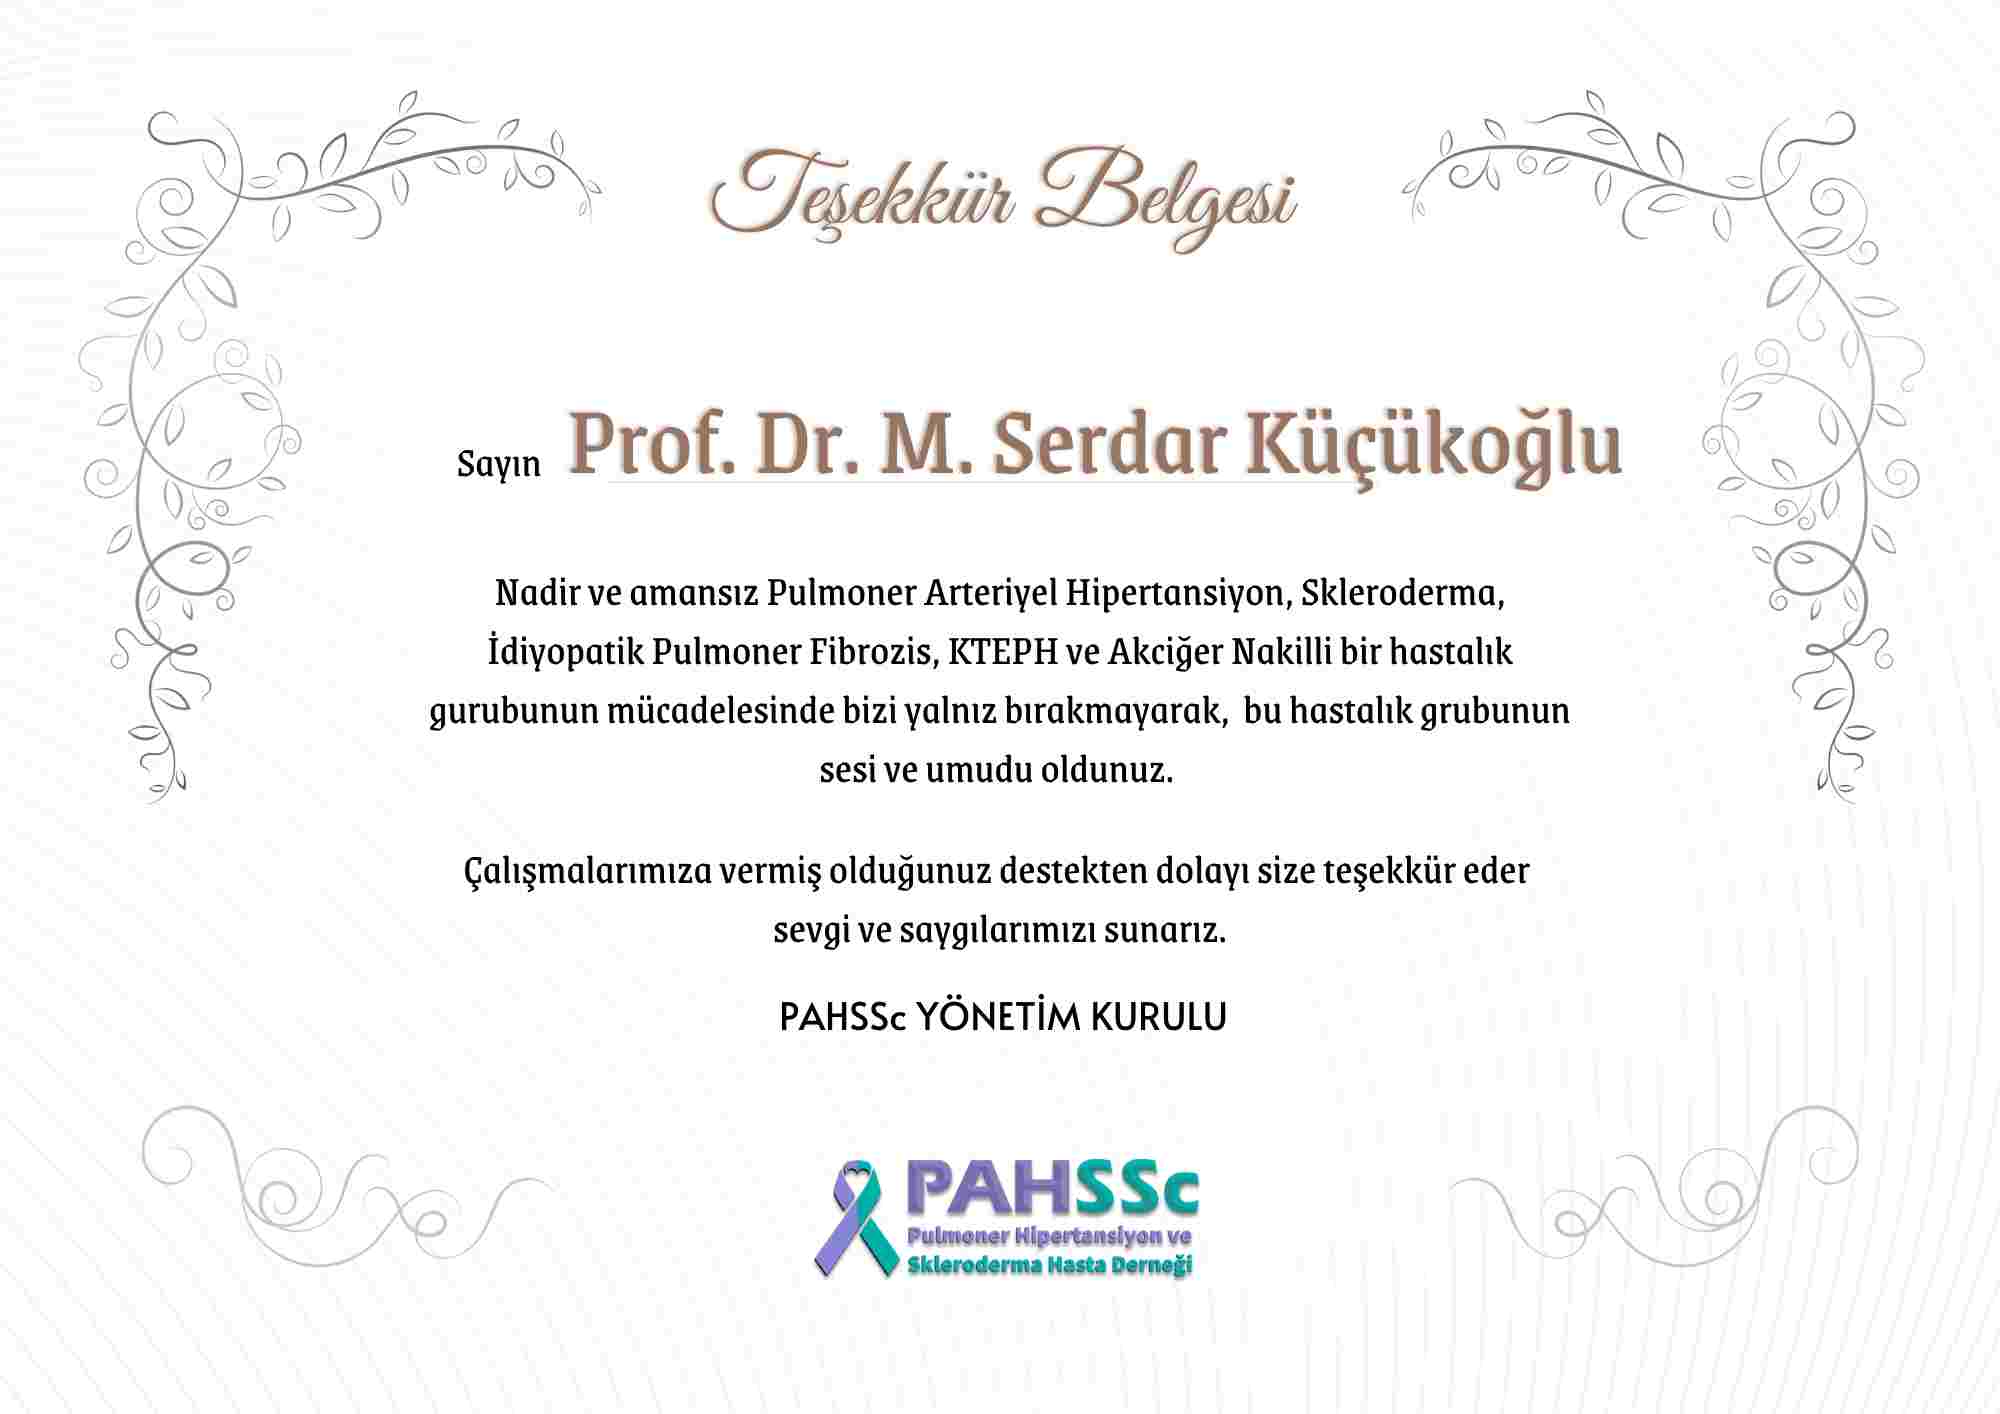 Prof. Dr. Mehmet Serdar Küçükoğlu